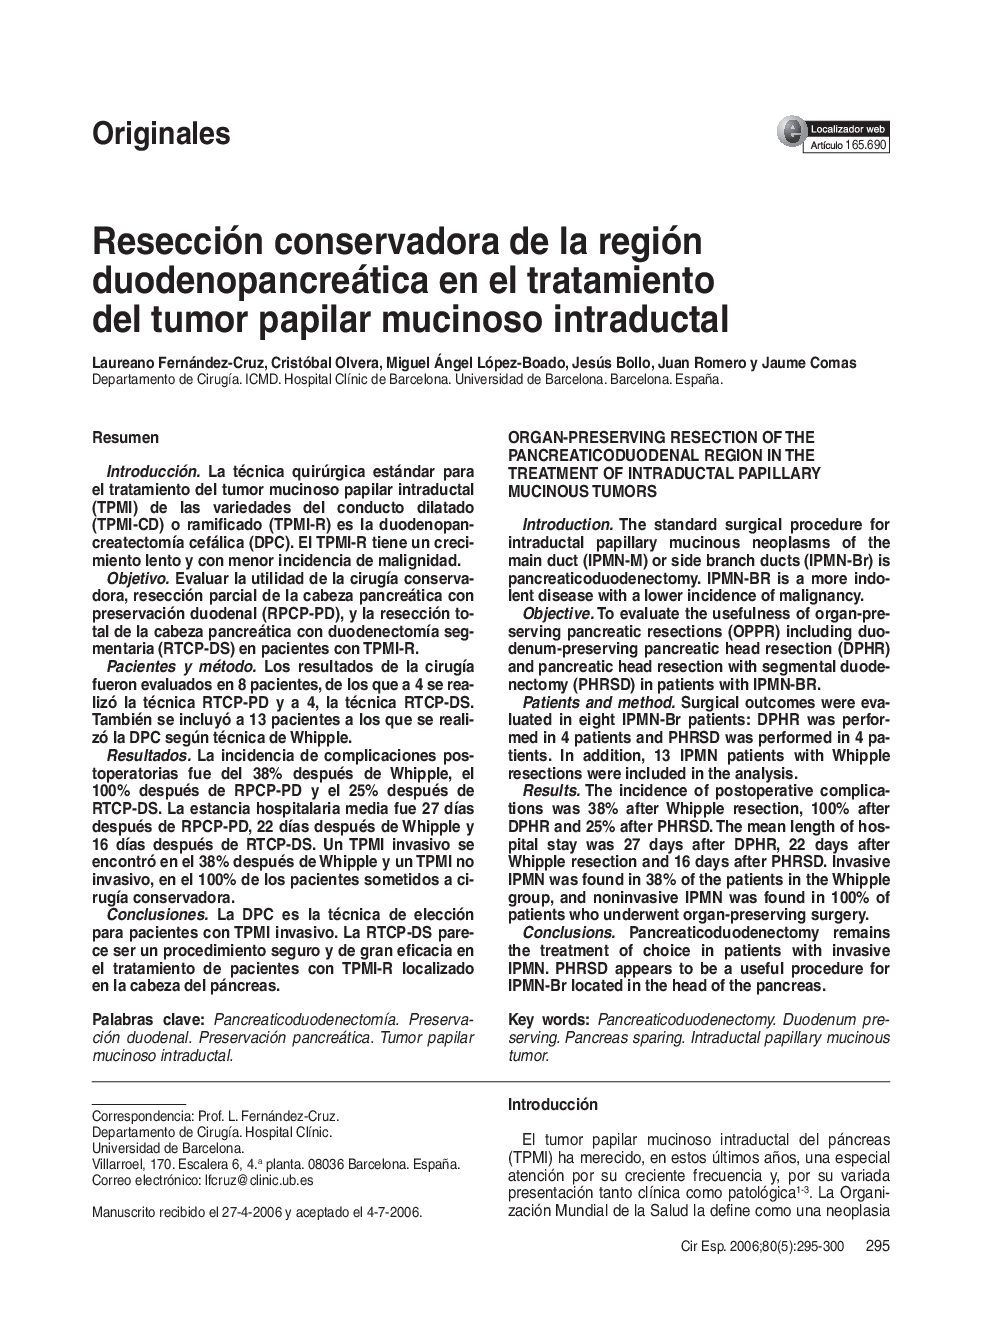 Resección conservadora de la región duodenopancreática en el tratamiento del tumor papilar mucinoso intraductal